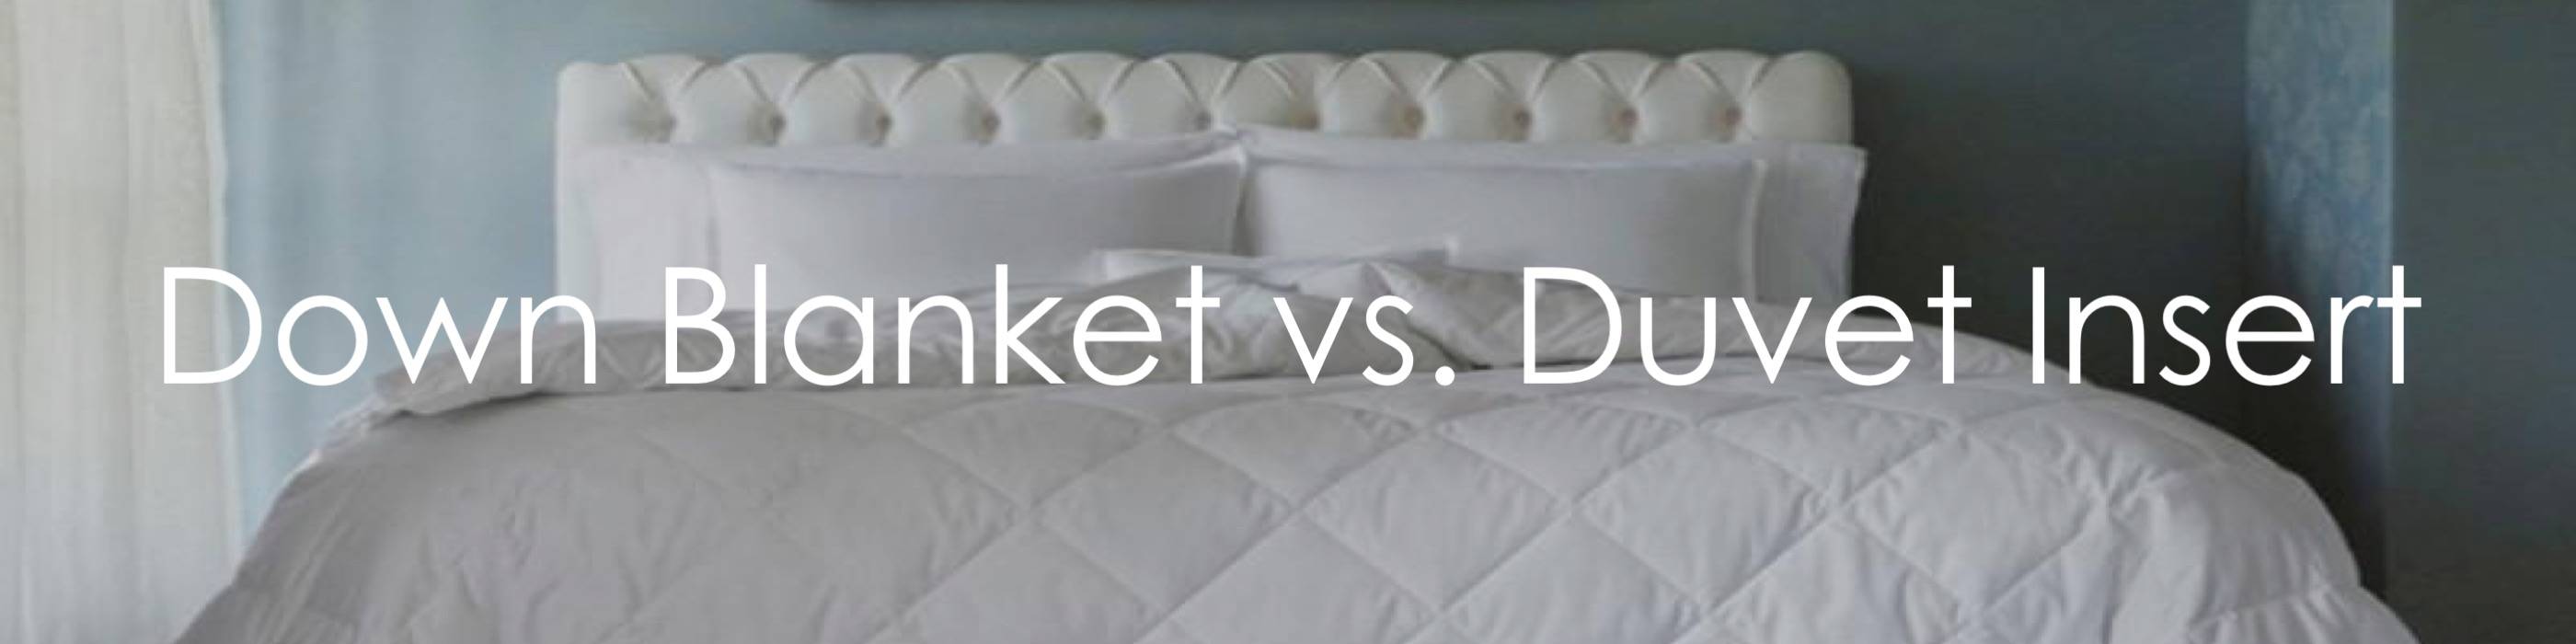 Down Blanket Cover Vs Duvet Insert, Does A Duvet Insert Need Coverage